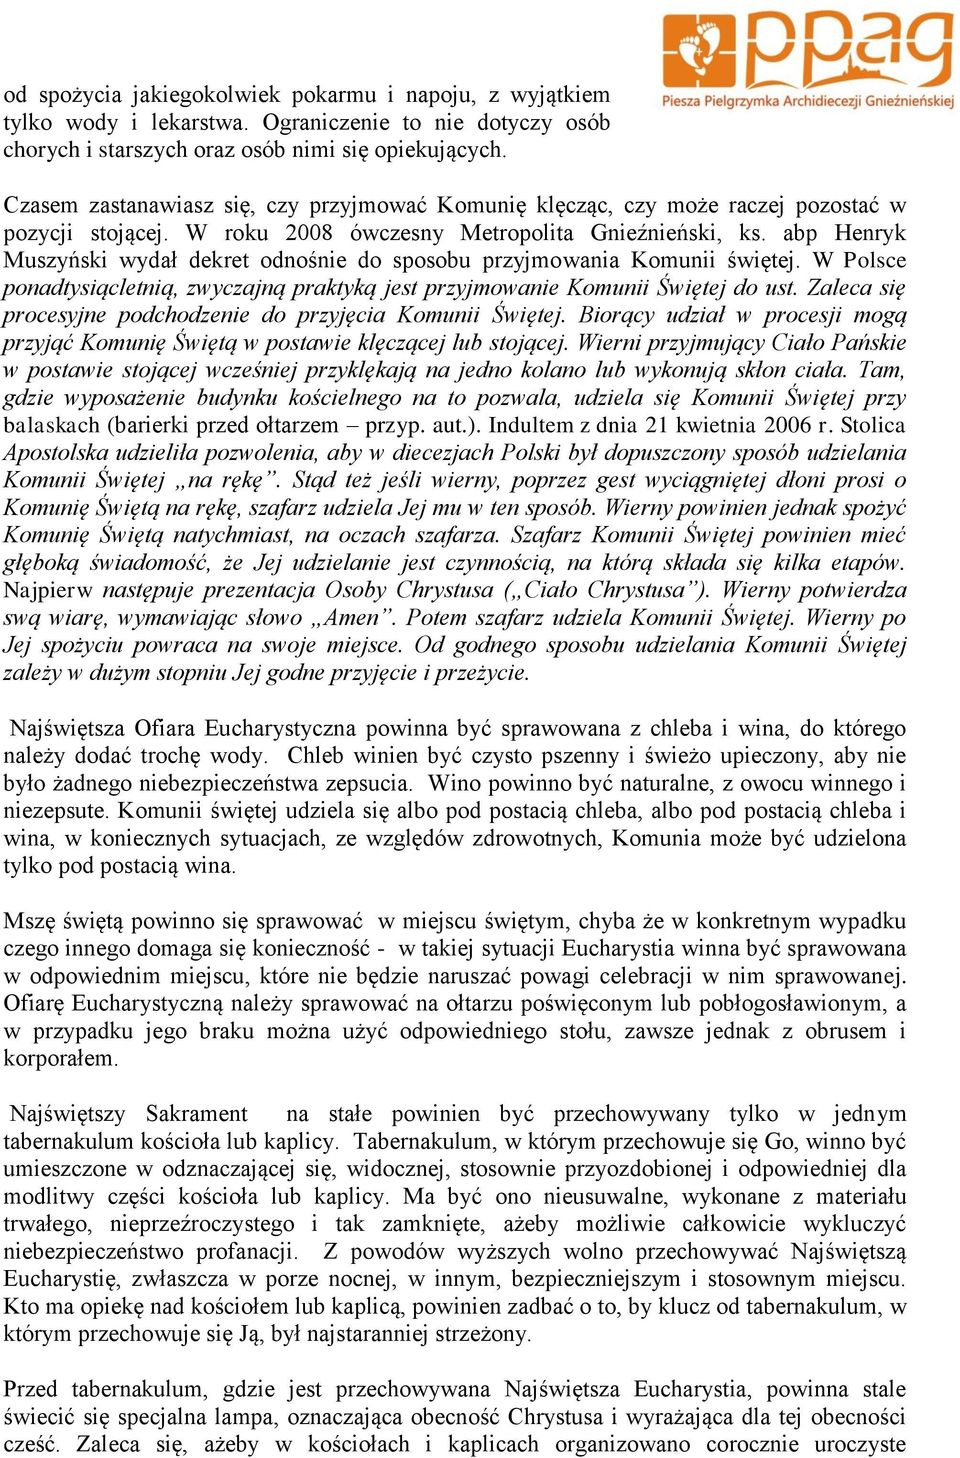 abp Henryk Muszyński wydał dekret odnośnie do sposobu przyjmowania Komunii świętej. W Polsce ponadtysiącletnią, zwyczajną praktyką jest przyjmowanie Komunii Świętej do ust.